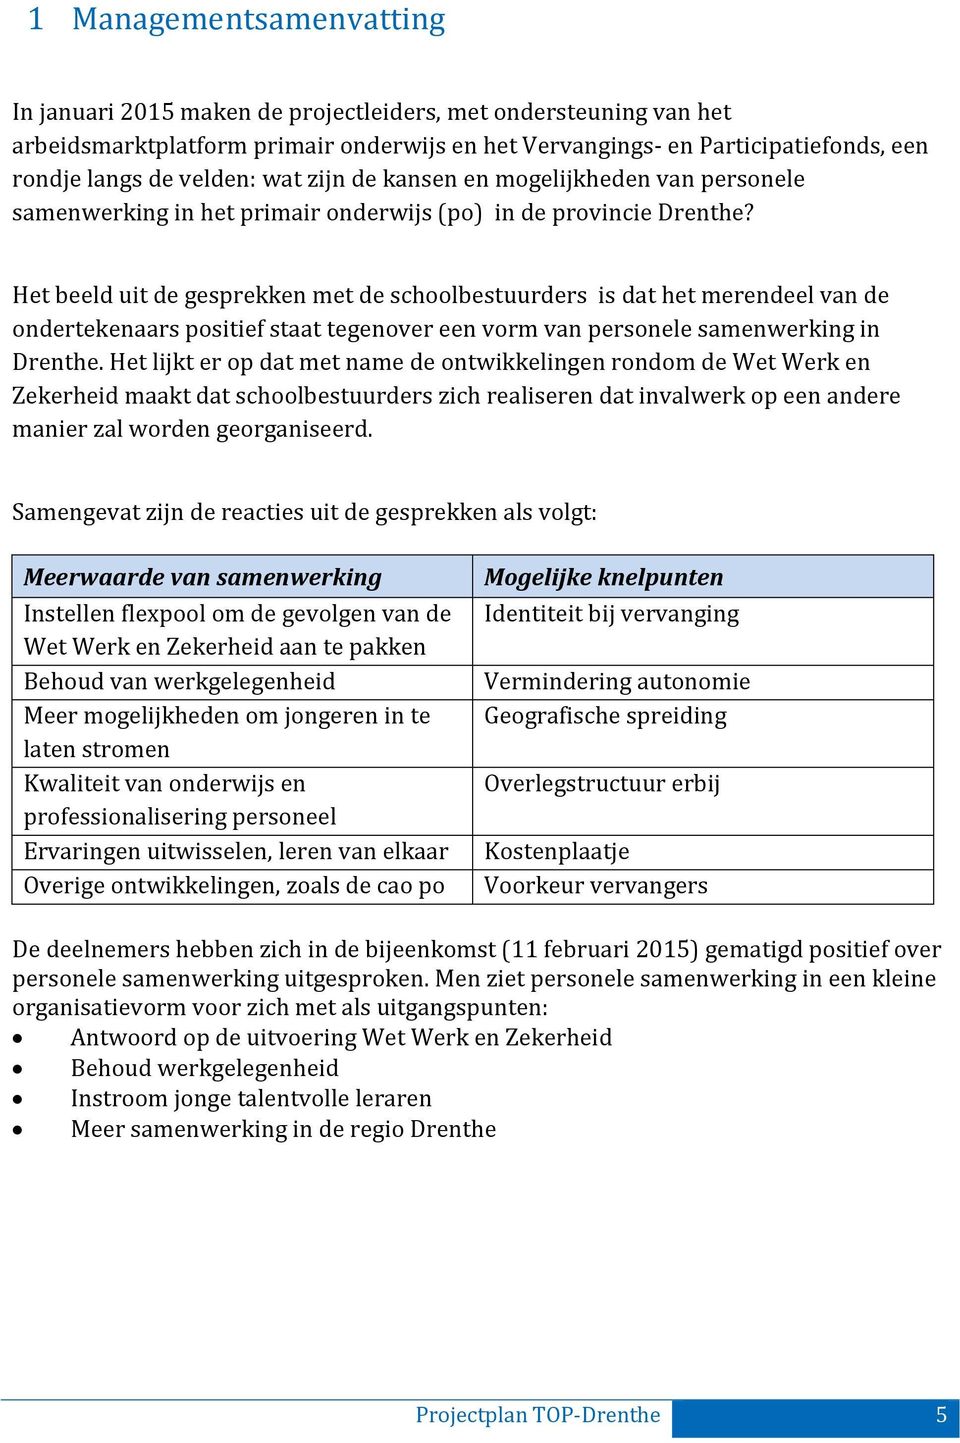 Het beeld uit de gesprekken met de schoolbestuurders is dat het merendeel van de ondertekenaars positief staat tegenover een vorm van personele samenwerking in Drenthe.